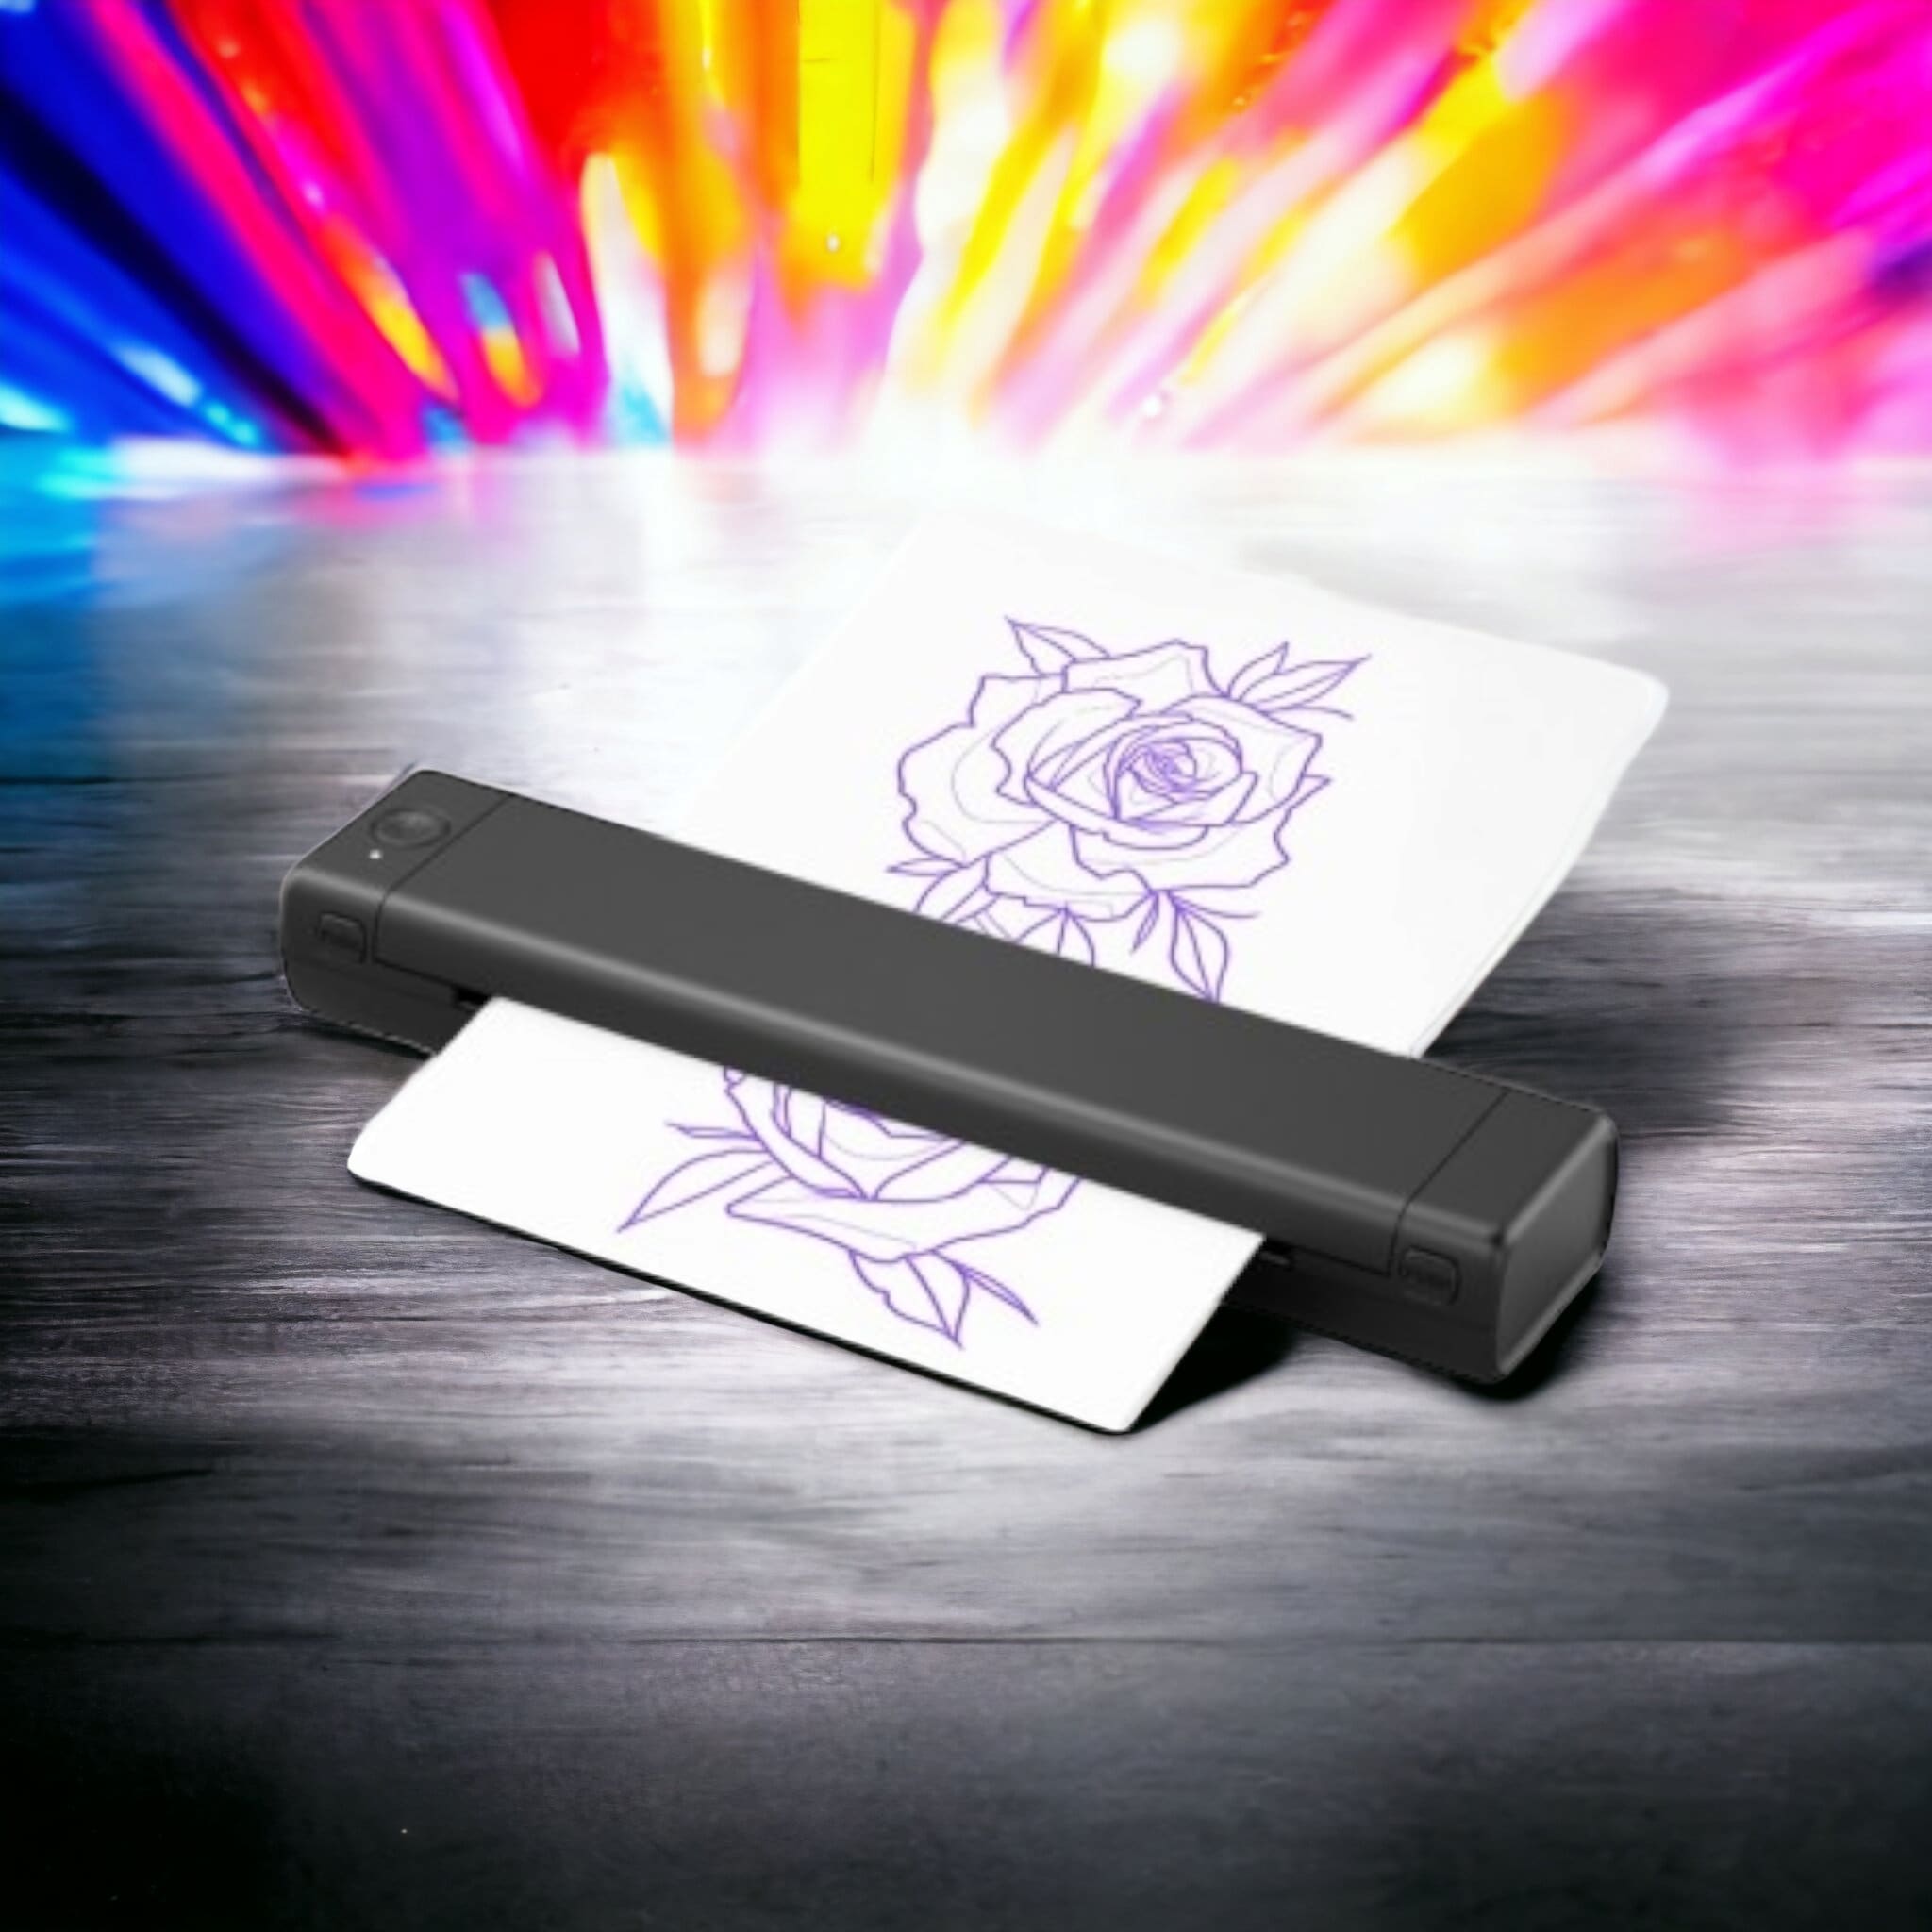 A4 Impresora térmica de tatuajes Bluetooth USB Tattoo Stencil Printer  compatible con teléfonos de computadora